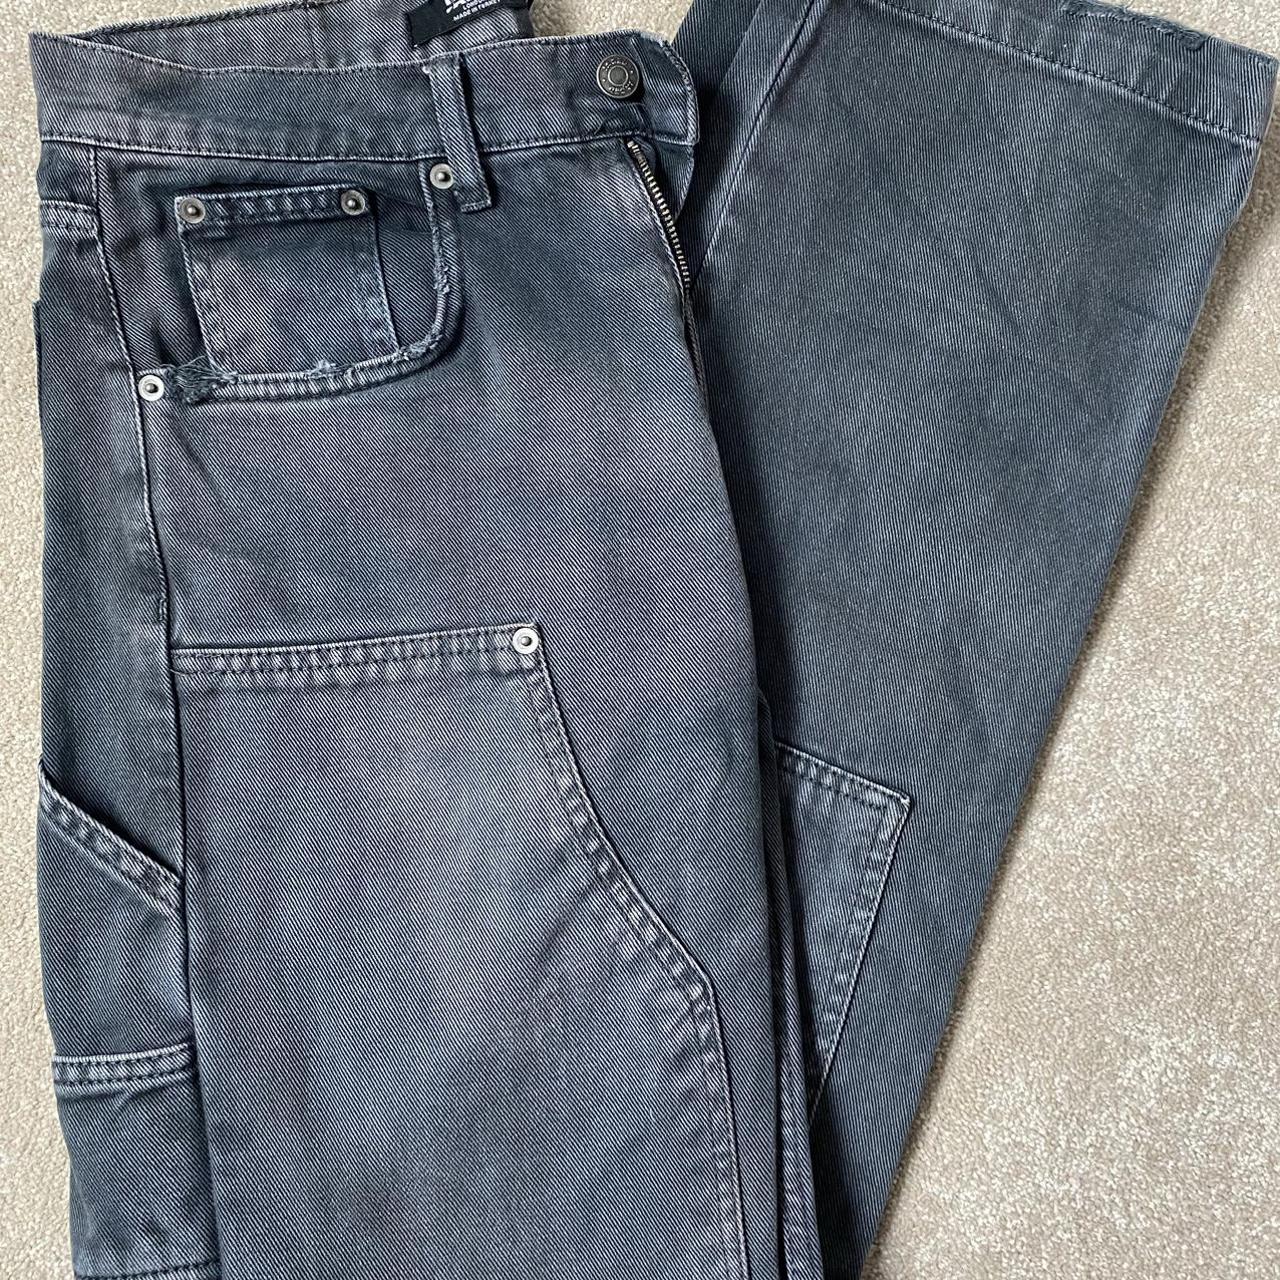 Jaded Man Washed Black Carpenter Jeans